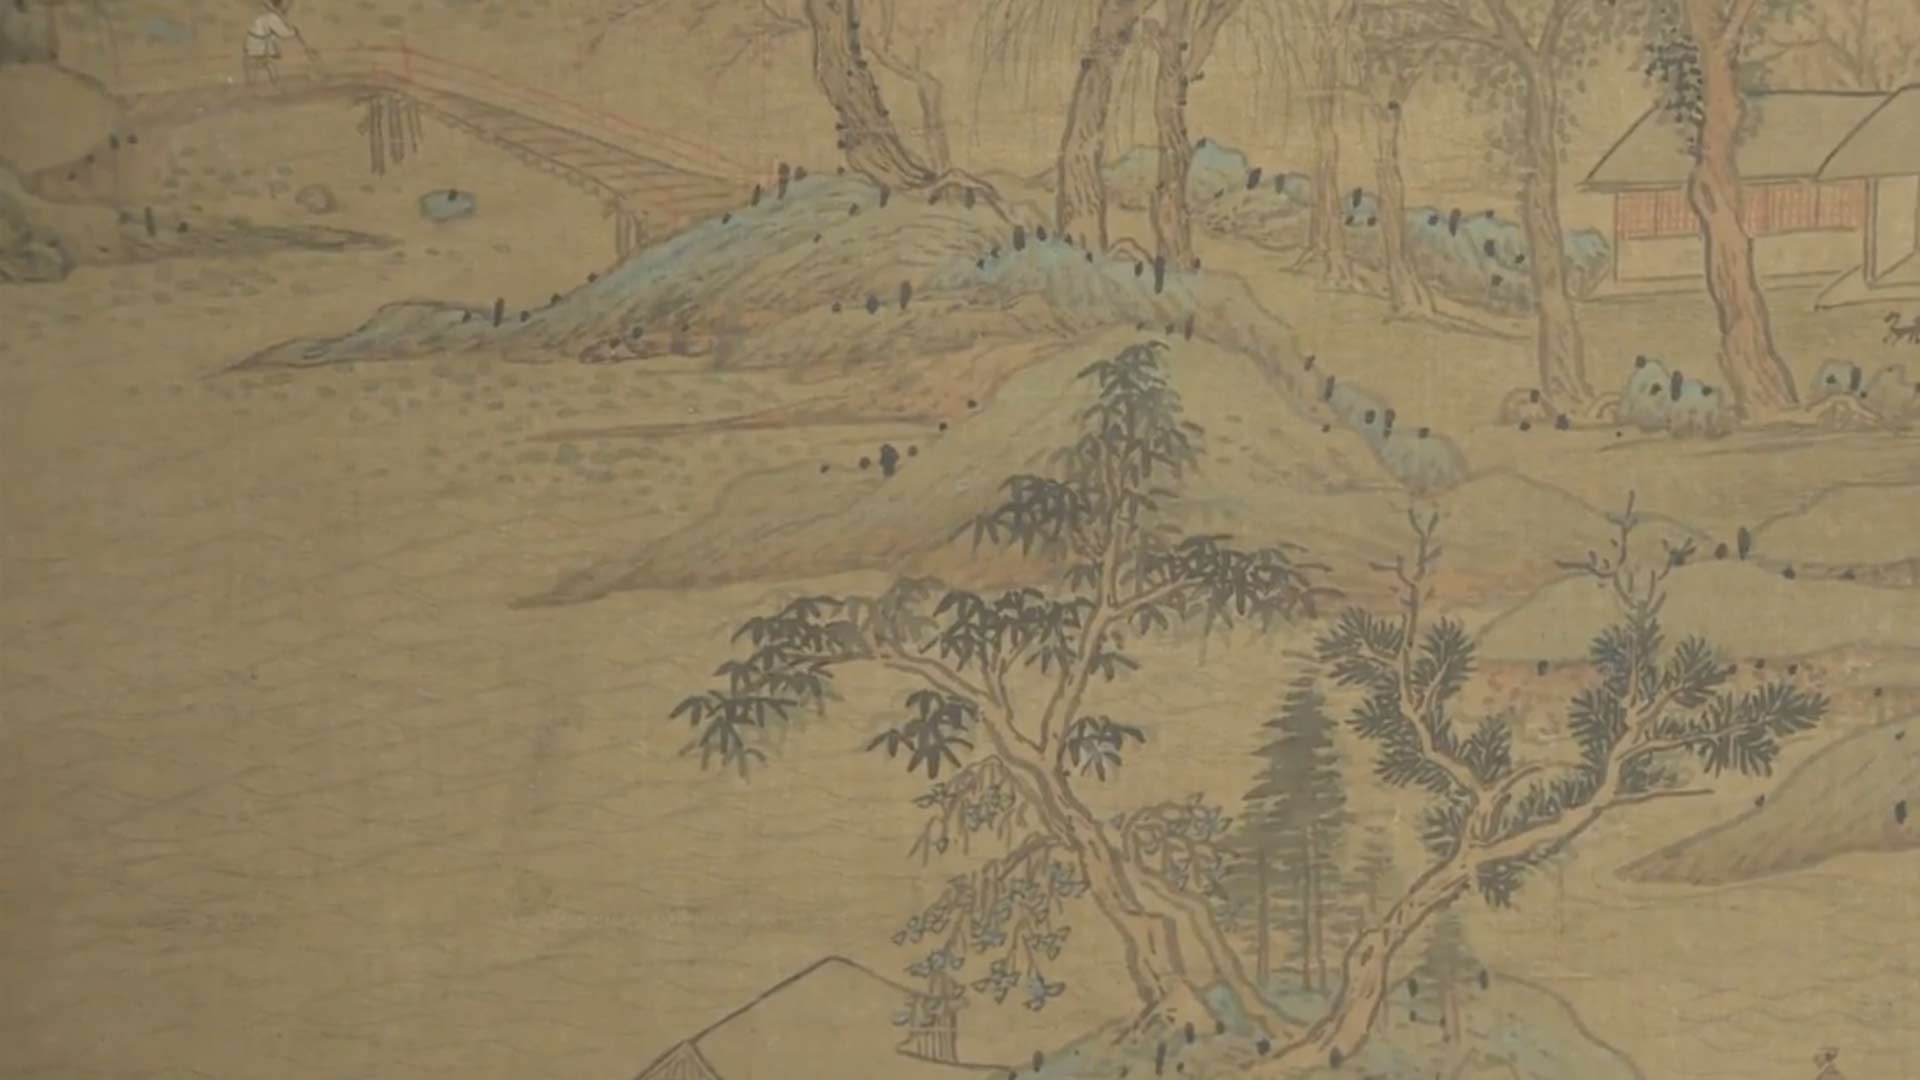 呼吸美学－中国古画赏析: 江山如画 (2021年)